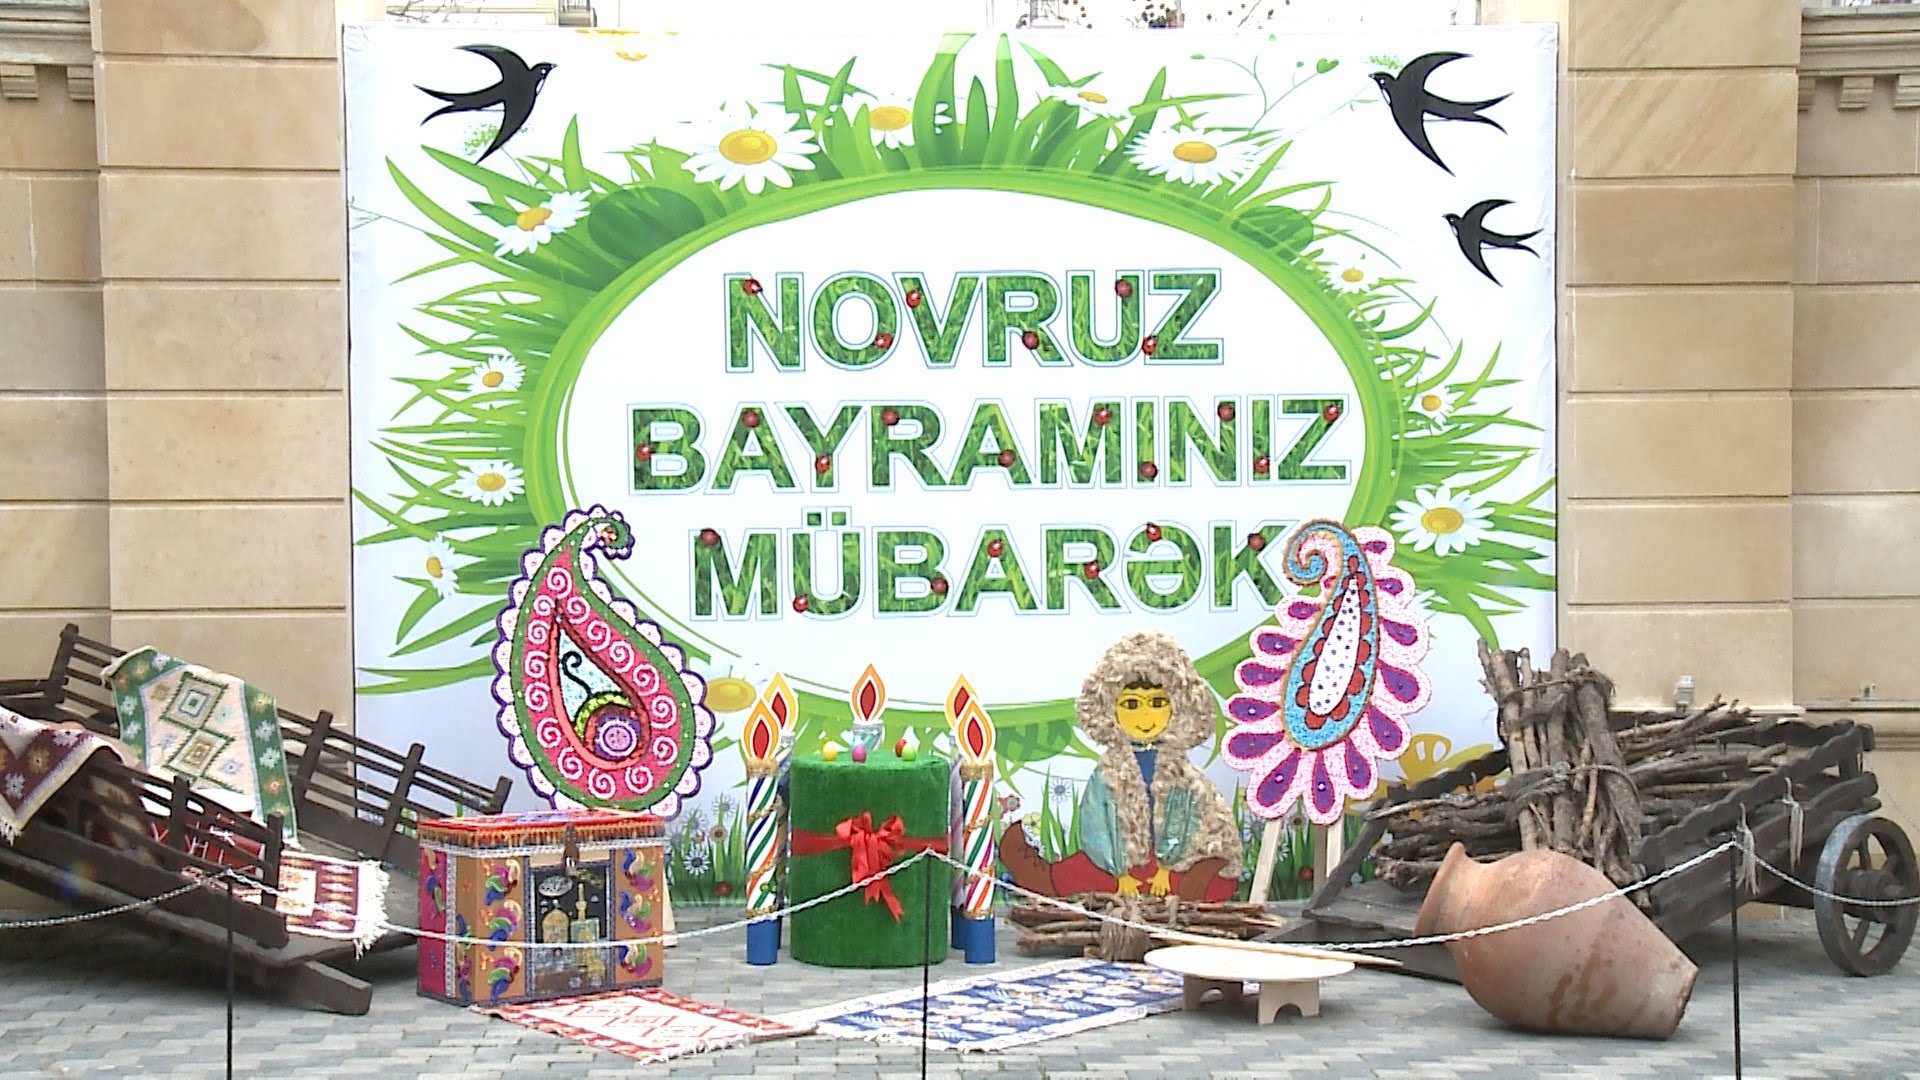 Поздравление с наврузом на азербайджанском языке. Новруз. Навруз картинки. Navruz открытки. Навруз поздравление картинки.